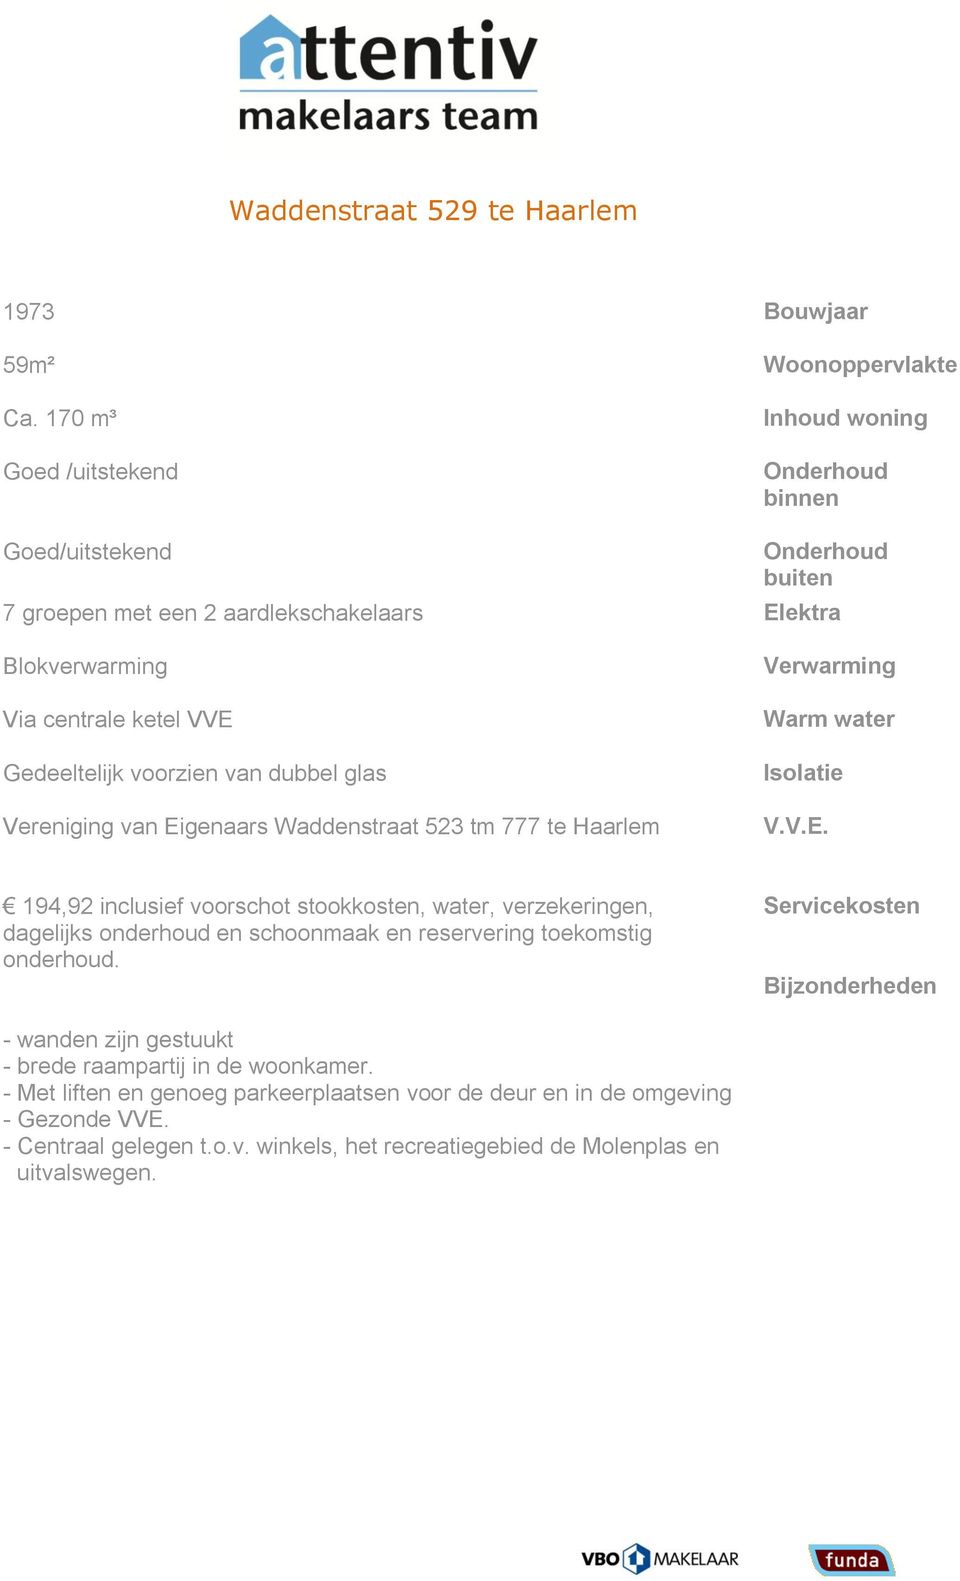 VVE Gedeeltelijk voorzien van dubbel glas Vereniging van Eigenaars Waddenstraat 523 tm 777 te Haarlem Verwarming Warm water Isolatie V.V.E. 194,92 inclusief voorschot stookkosten, water, verzekeringen, dagelijks onderhoud en schoonmaak en reservering toekomstig onderhoud.